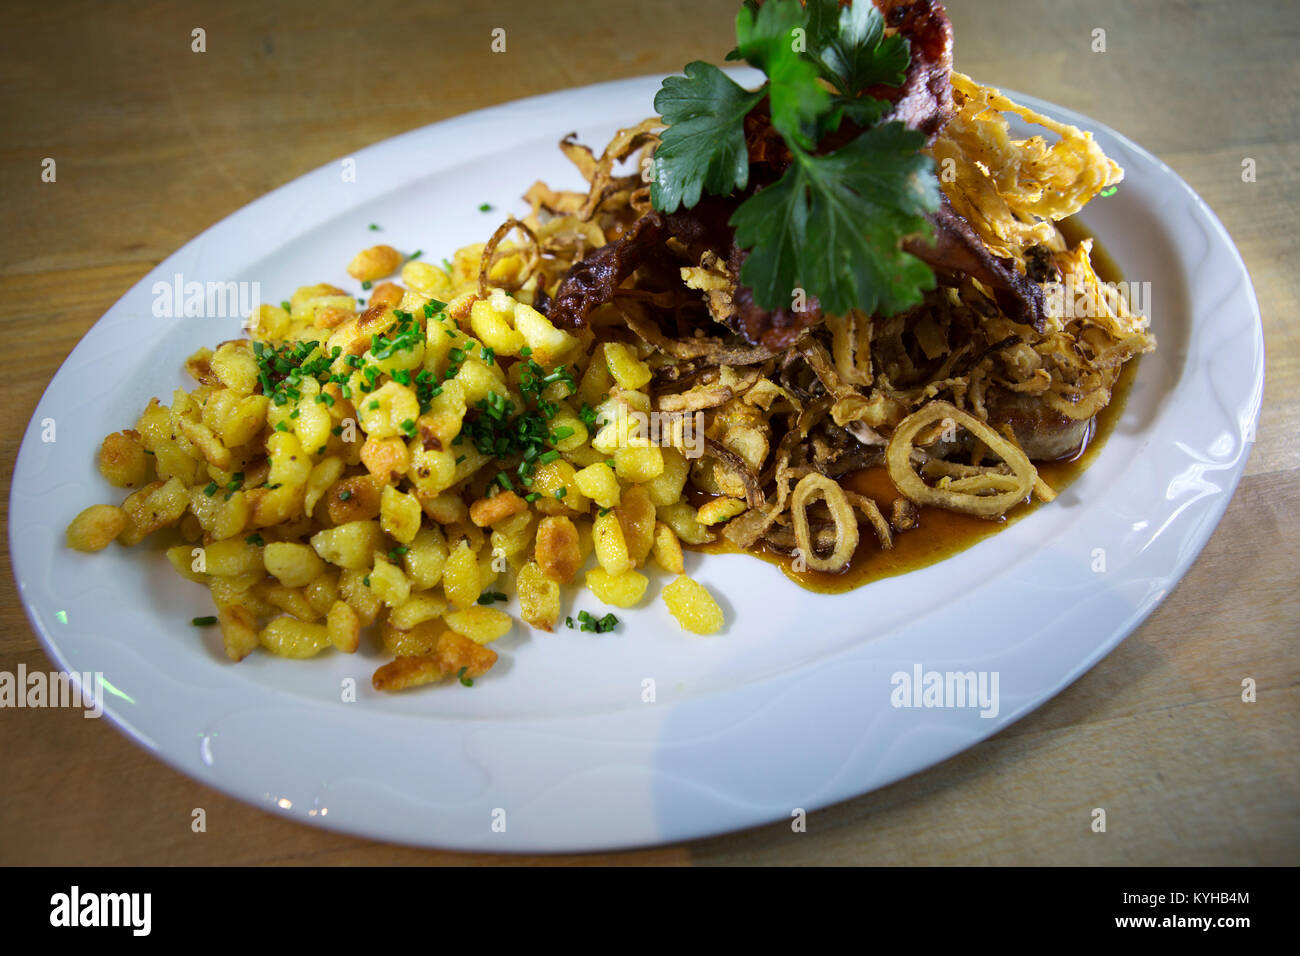 Spaetzle servi avec le porc et les oignons frits à Nuremberg, Allemagne. Le plat est une spécialité du sud de l'Allemagne traditionnelle. Banque D'Images